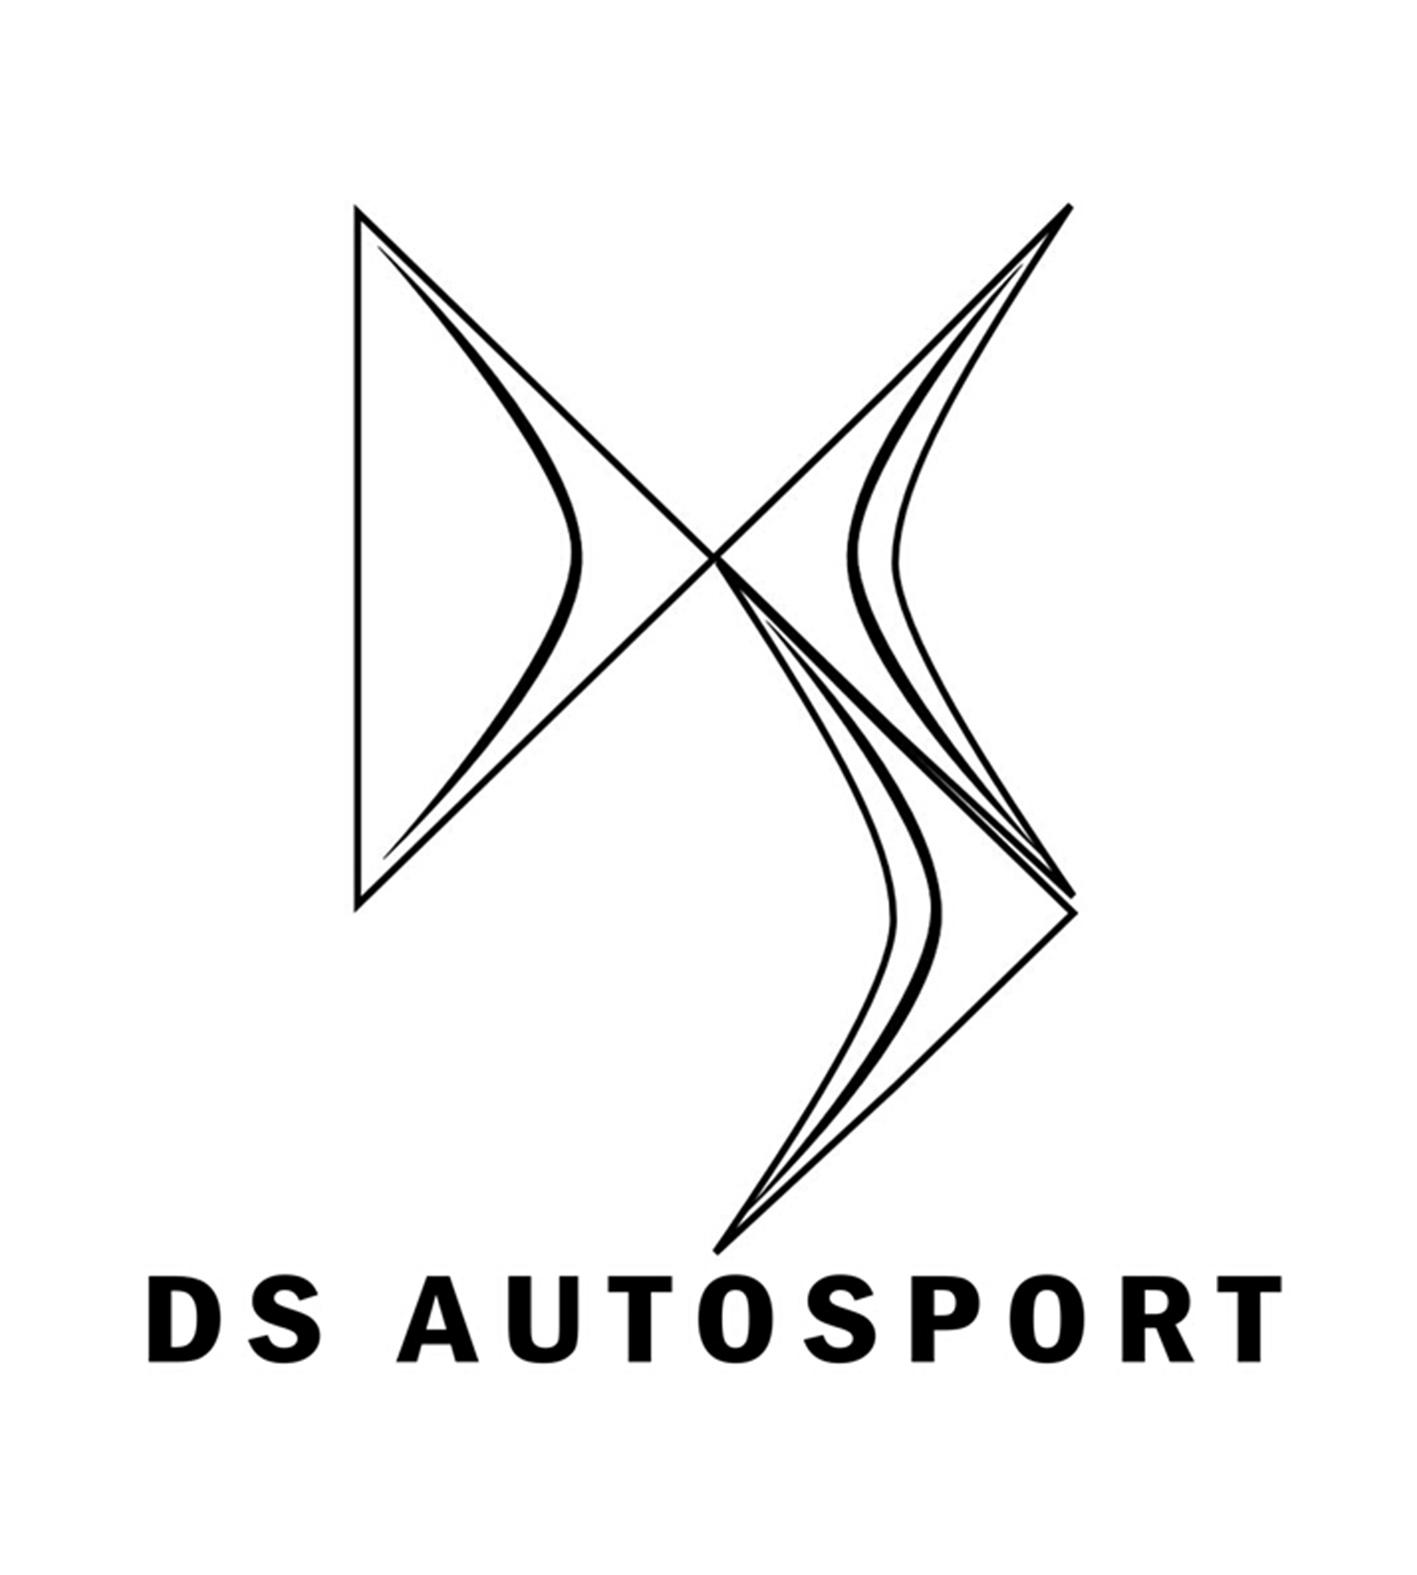 汽车商标DS图片